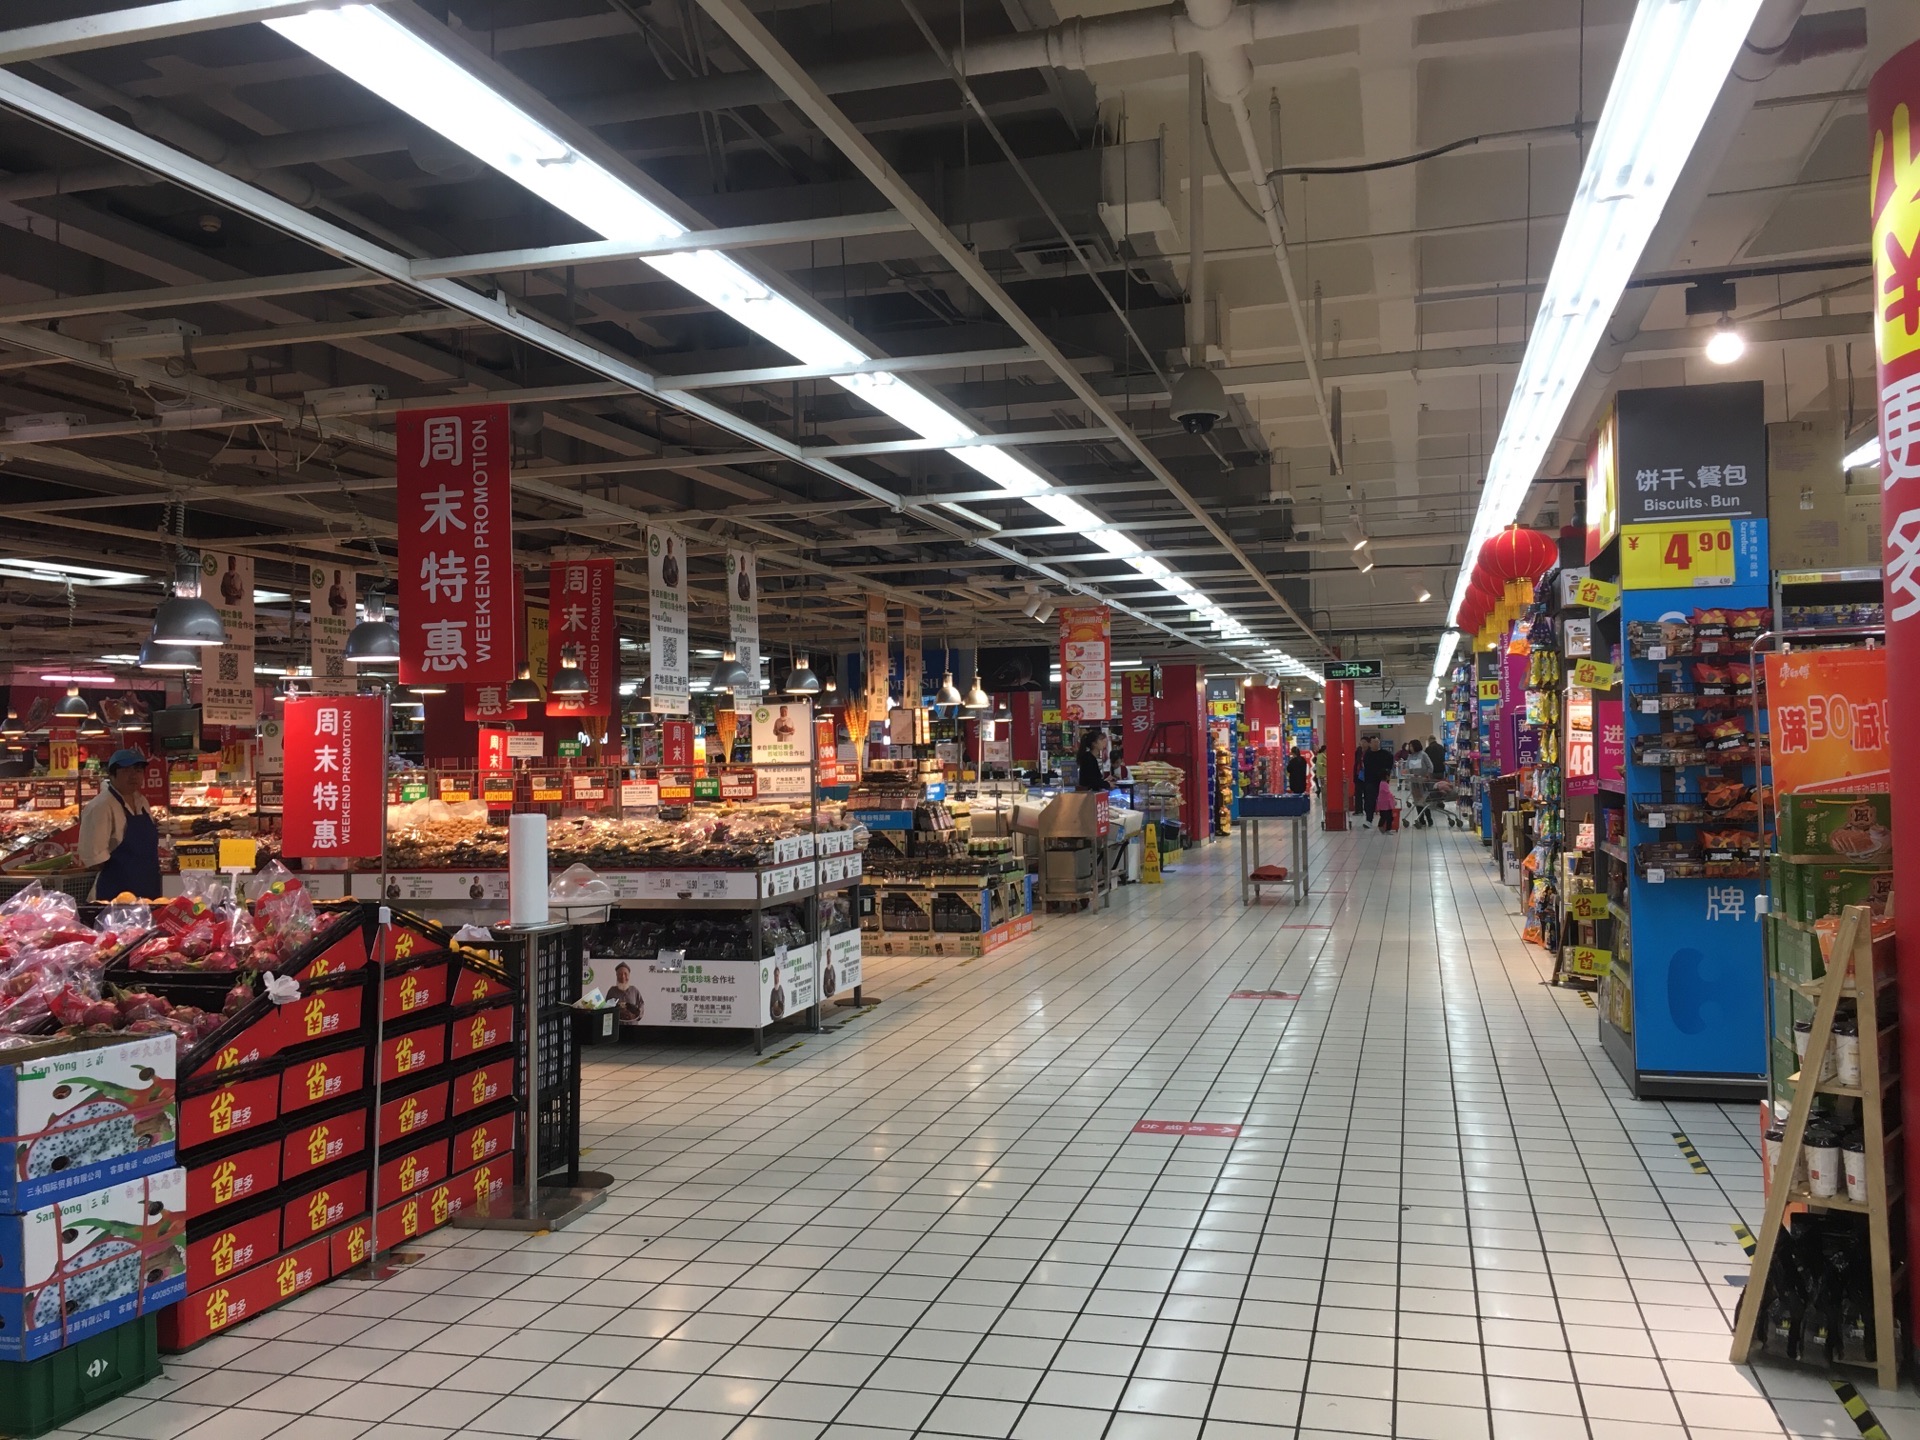 家乐福超市是我们最喜欢去的大型超市,这里环境很好,商品琳琅满目